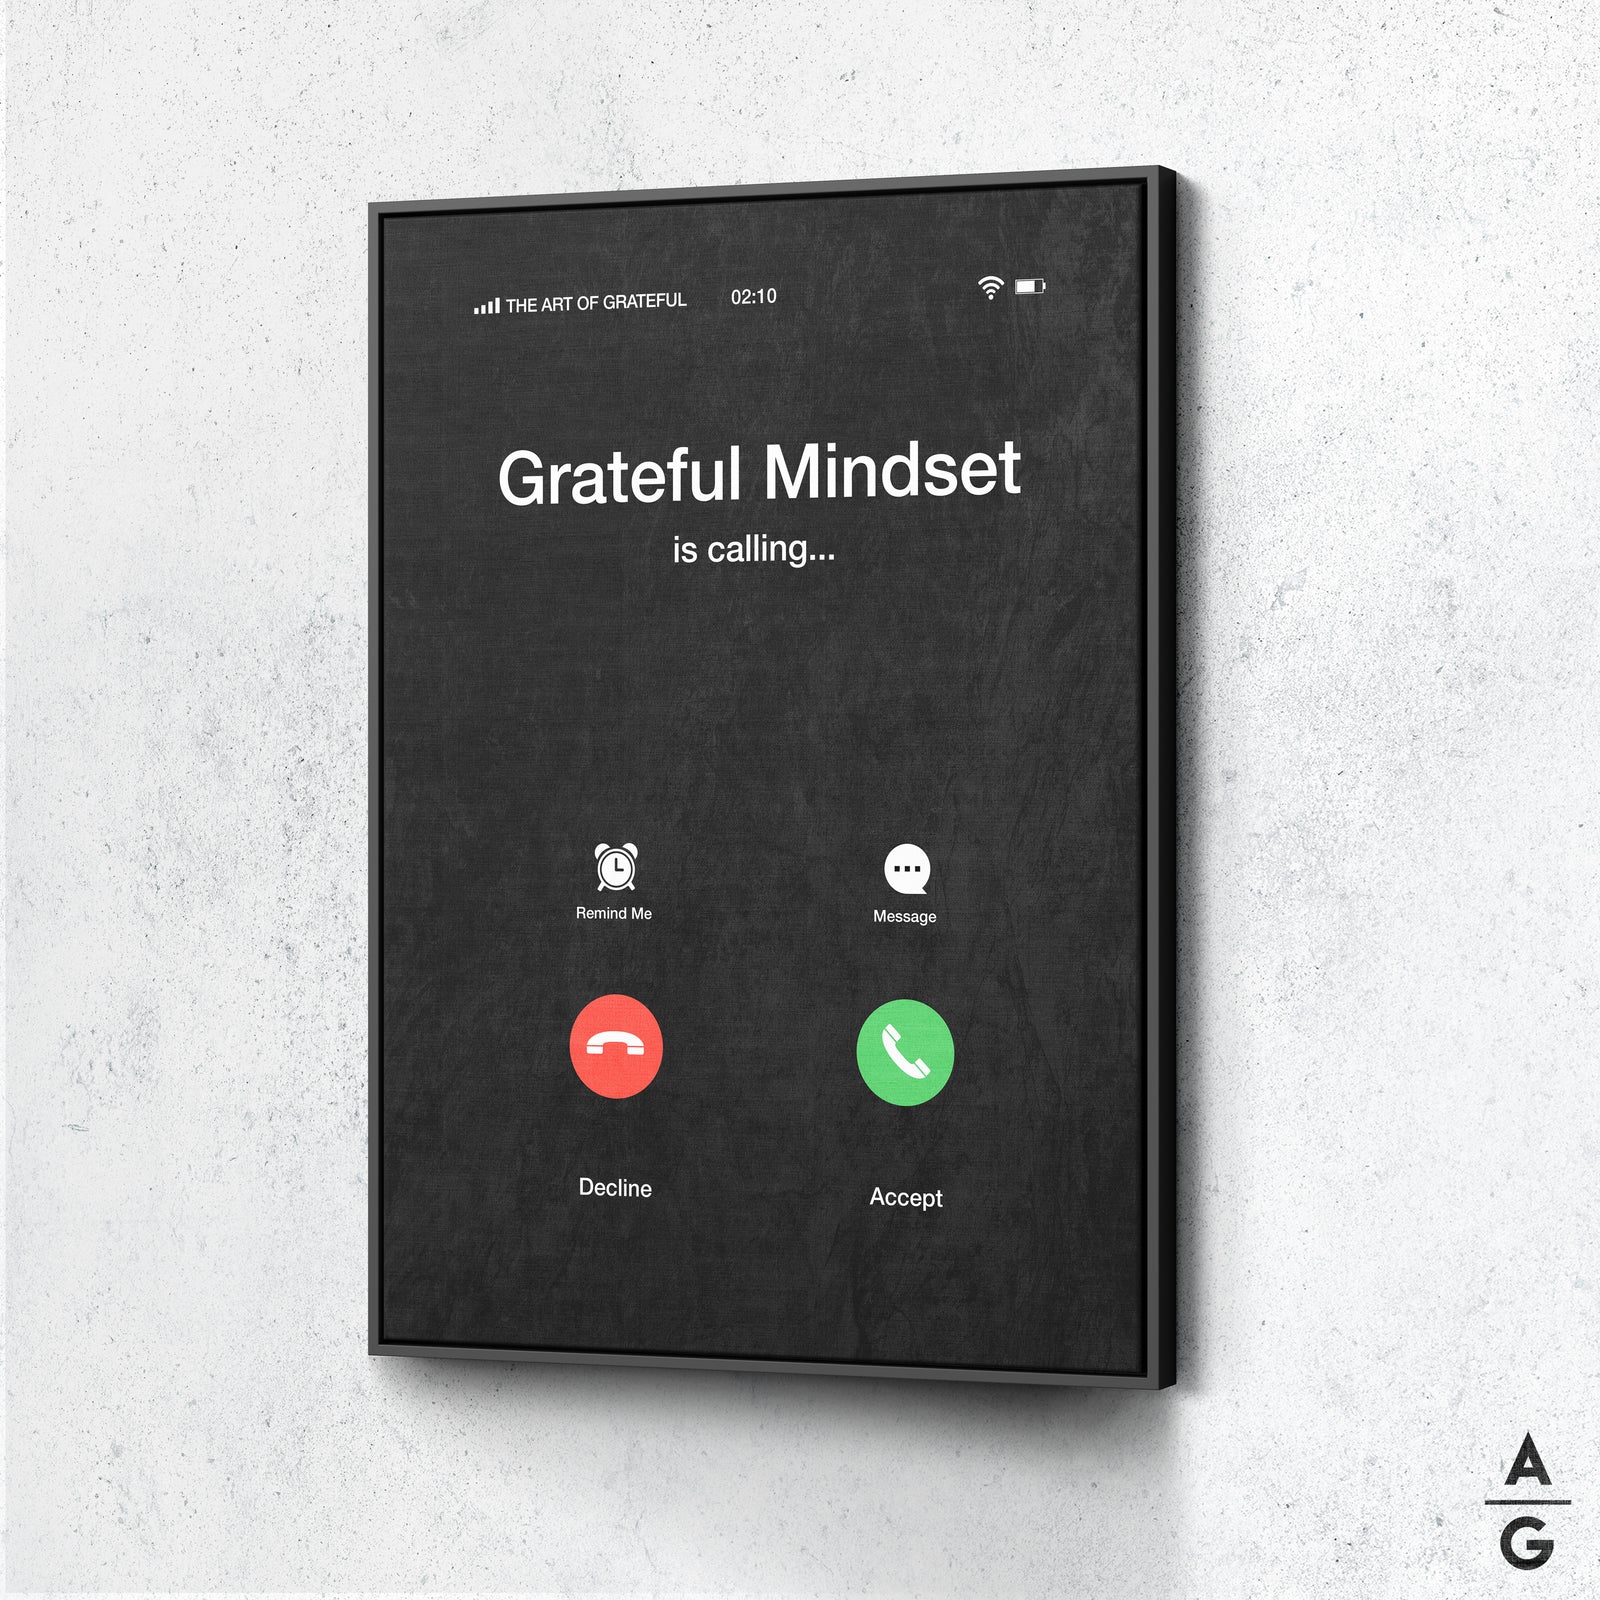 Grateful mindset is calling - The Art Of Grateful